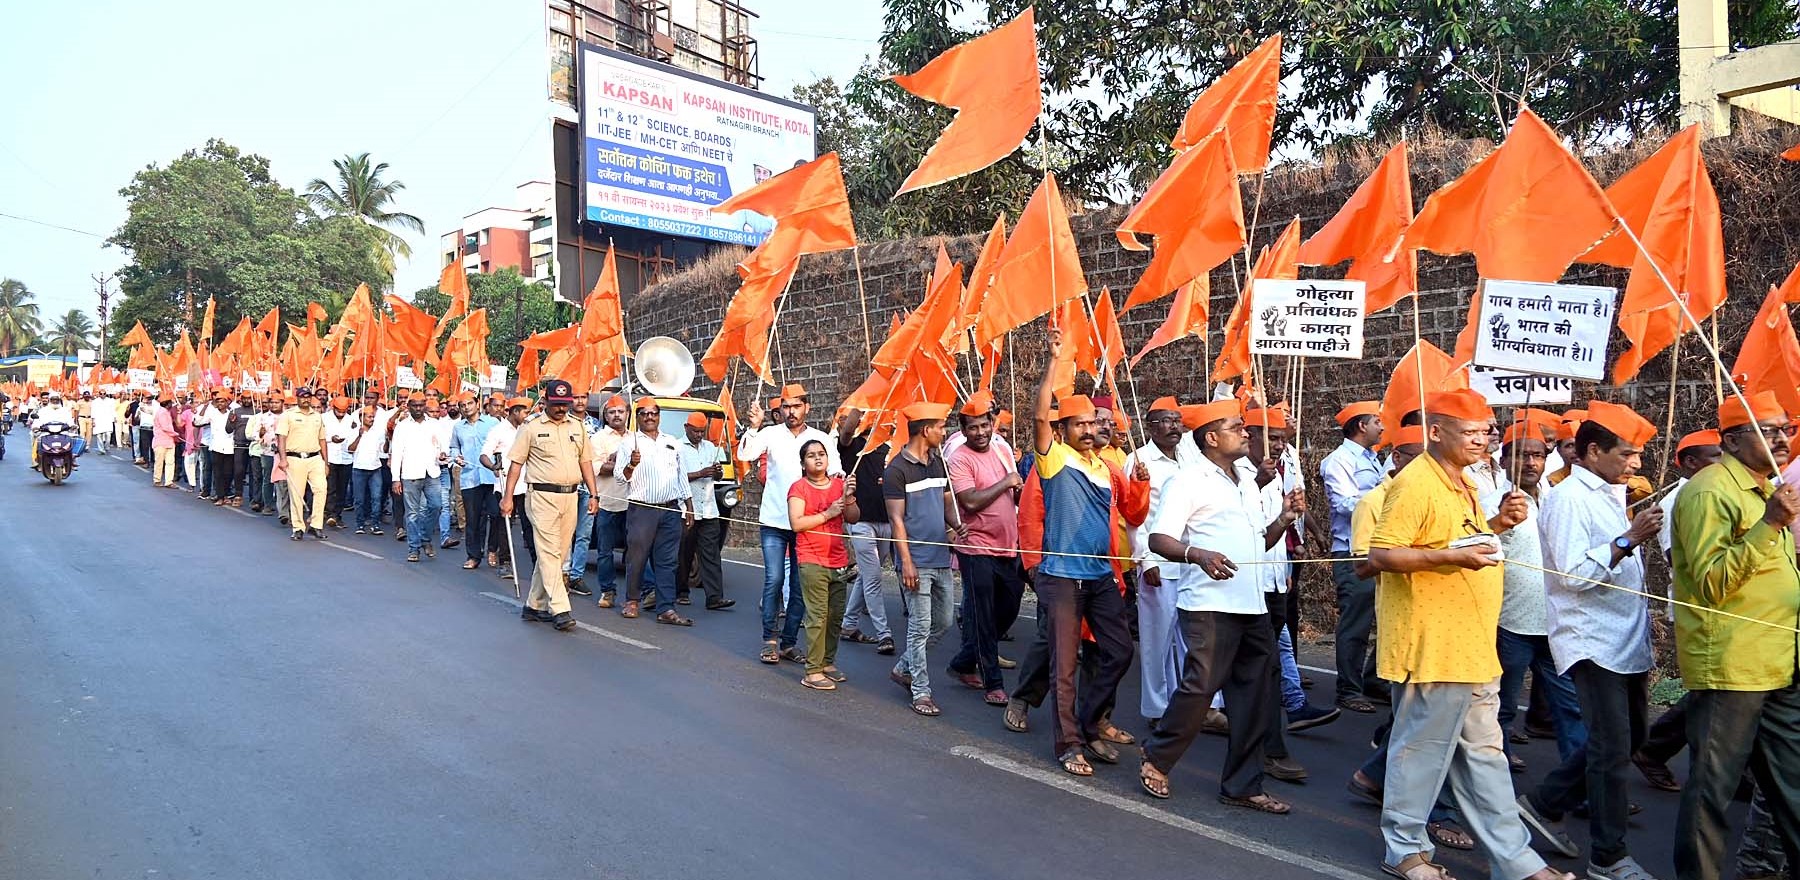 Grand Hindu roar march by Hindu community